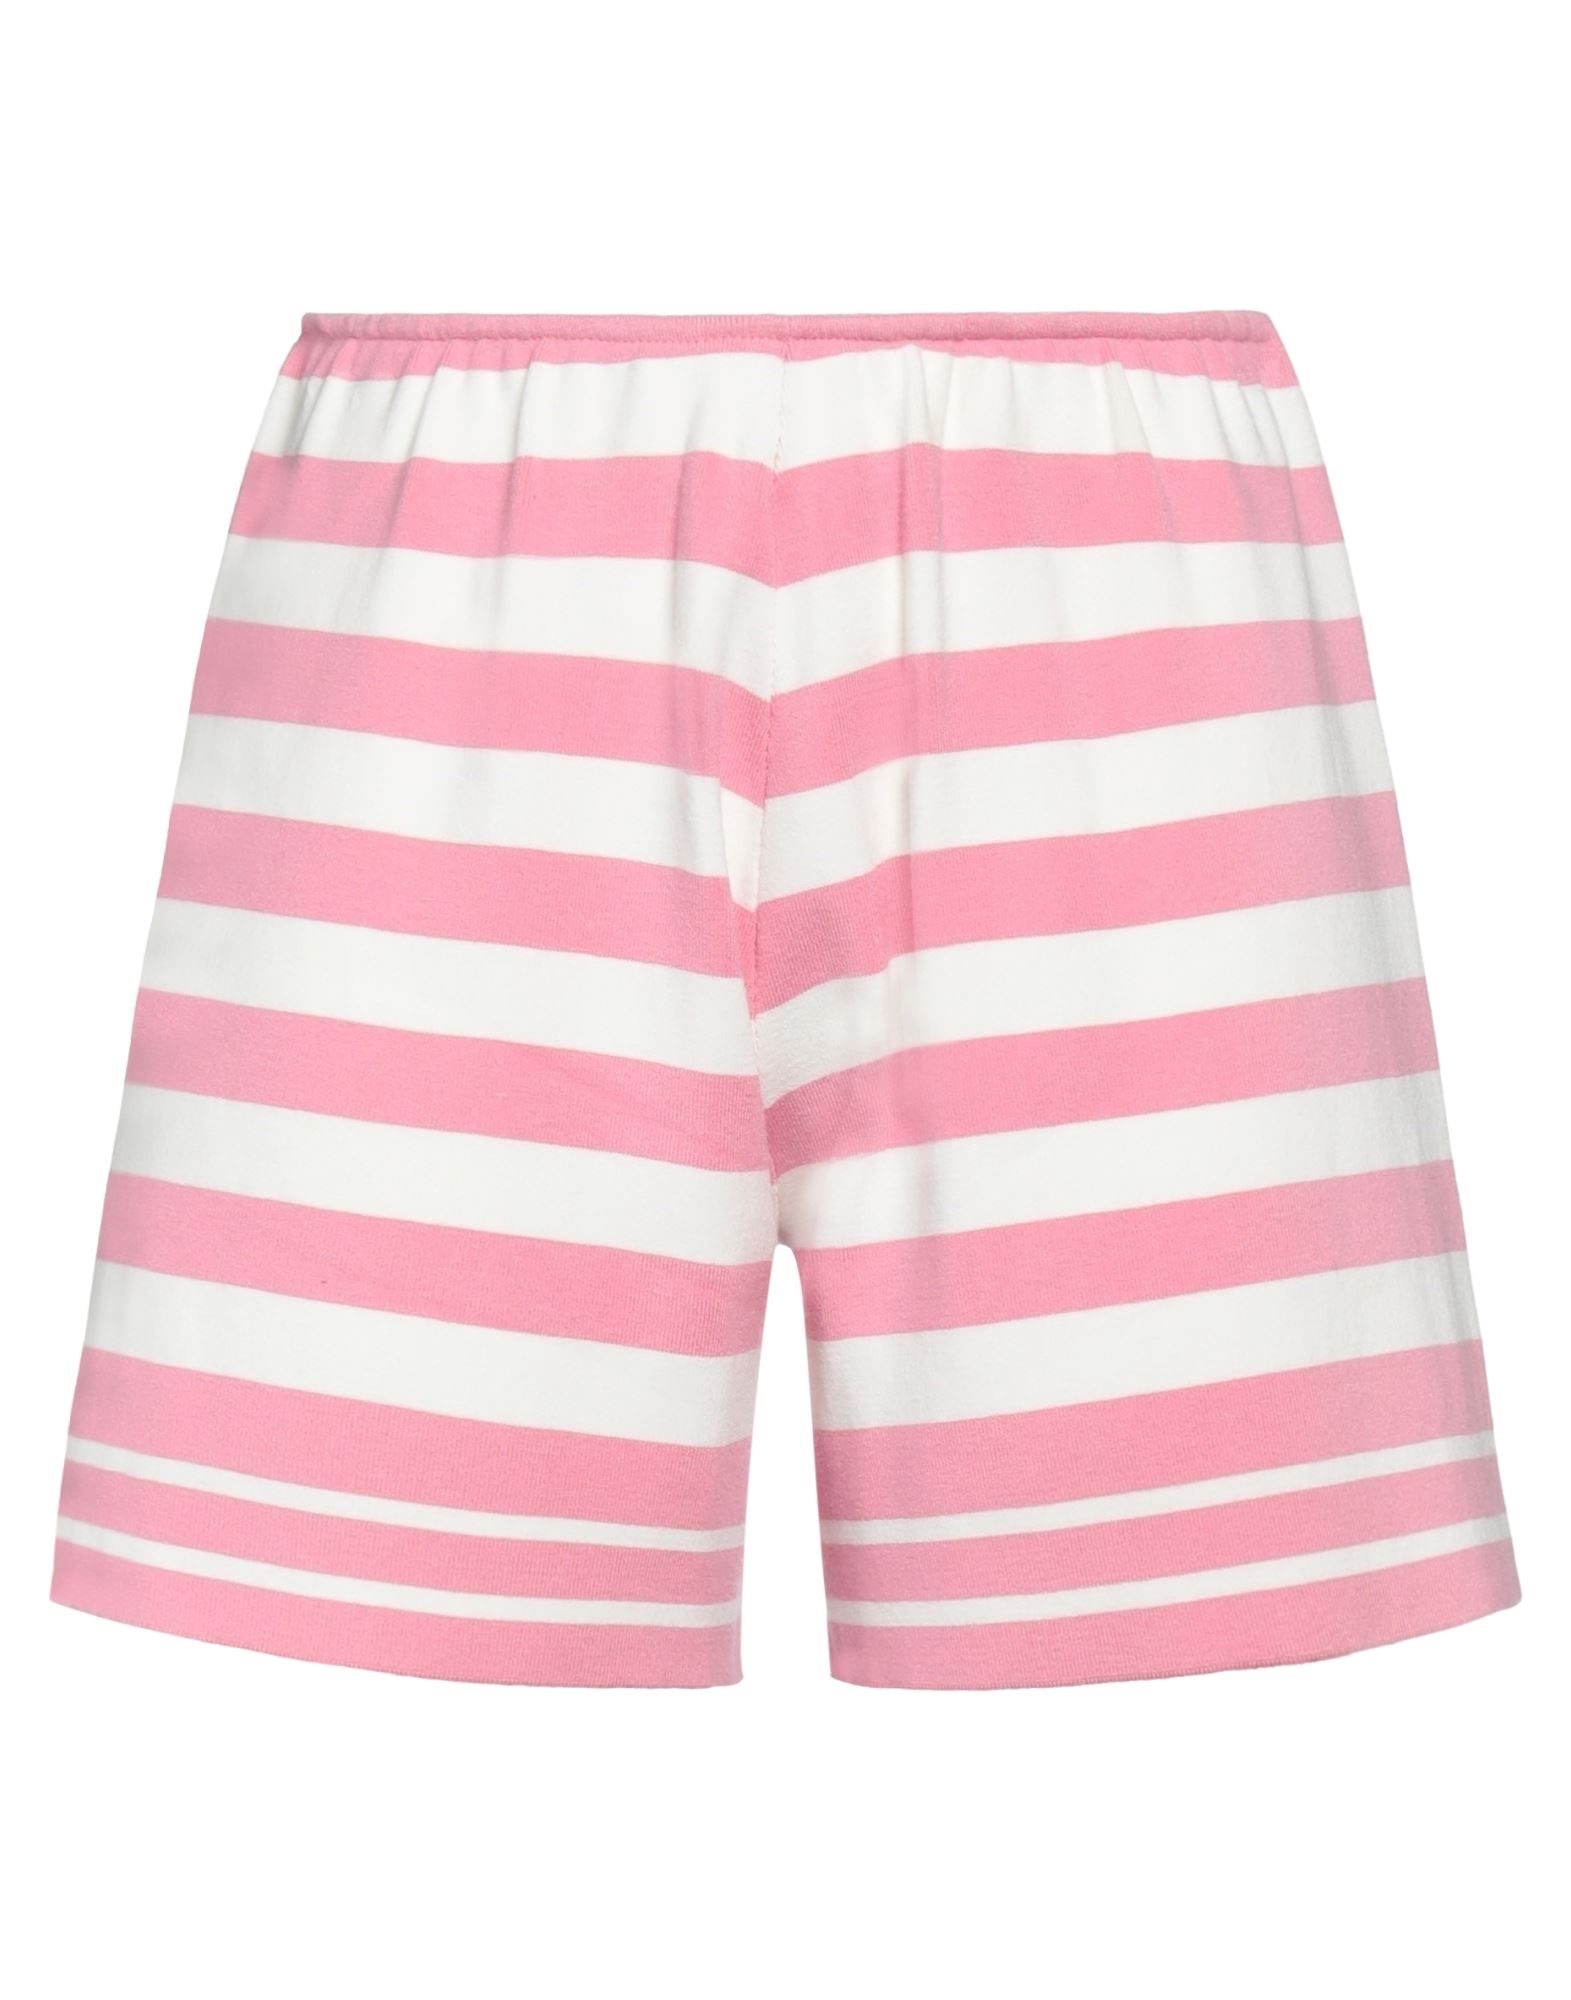 Kaos Woman Shorts & Bermuda Shorts Pink Size M Viscose, Polyester